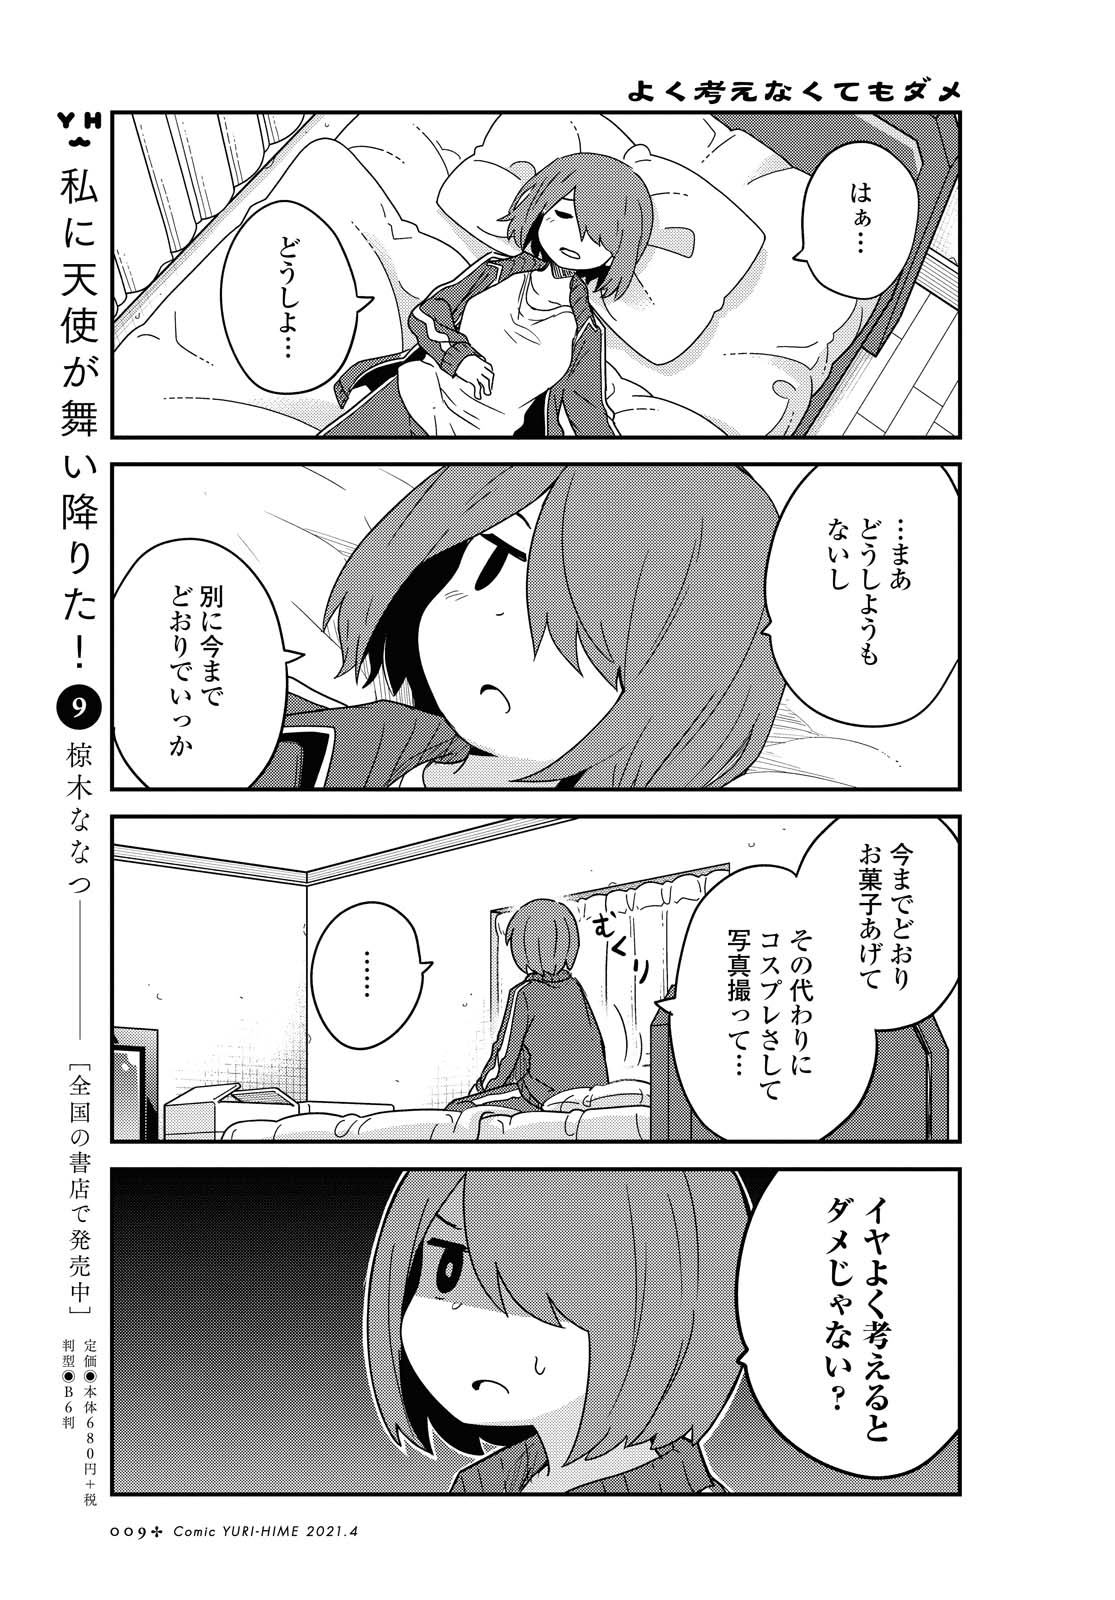 Watashi ni Tenshi ga Maiorita! - Chapter 78.1 - Page 5